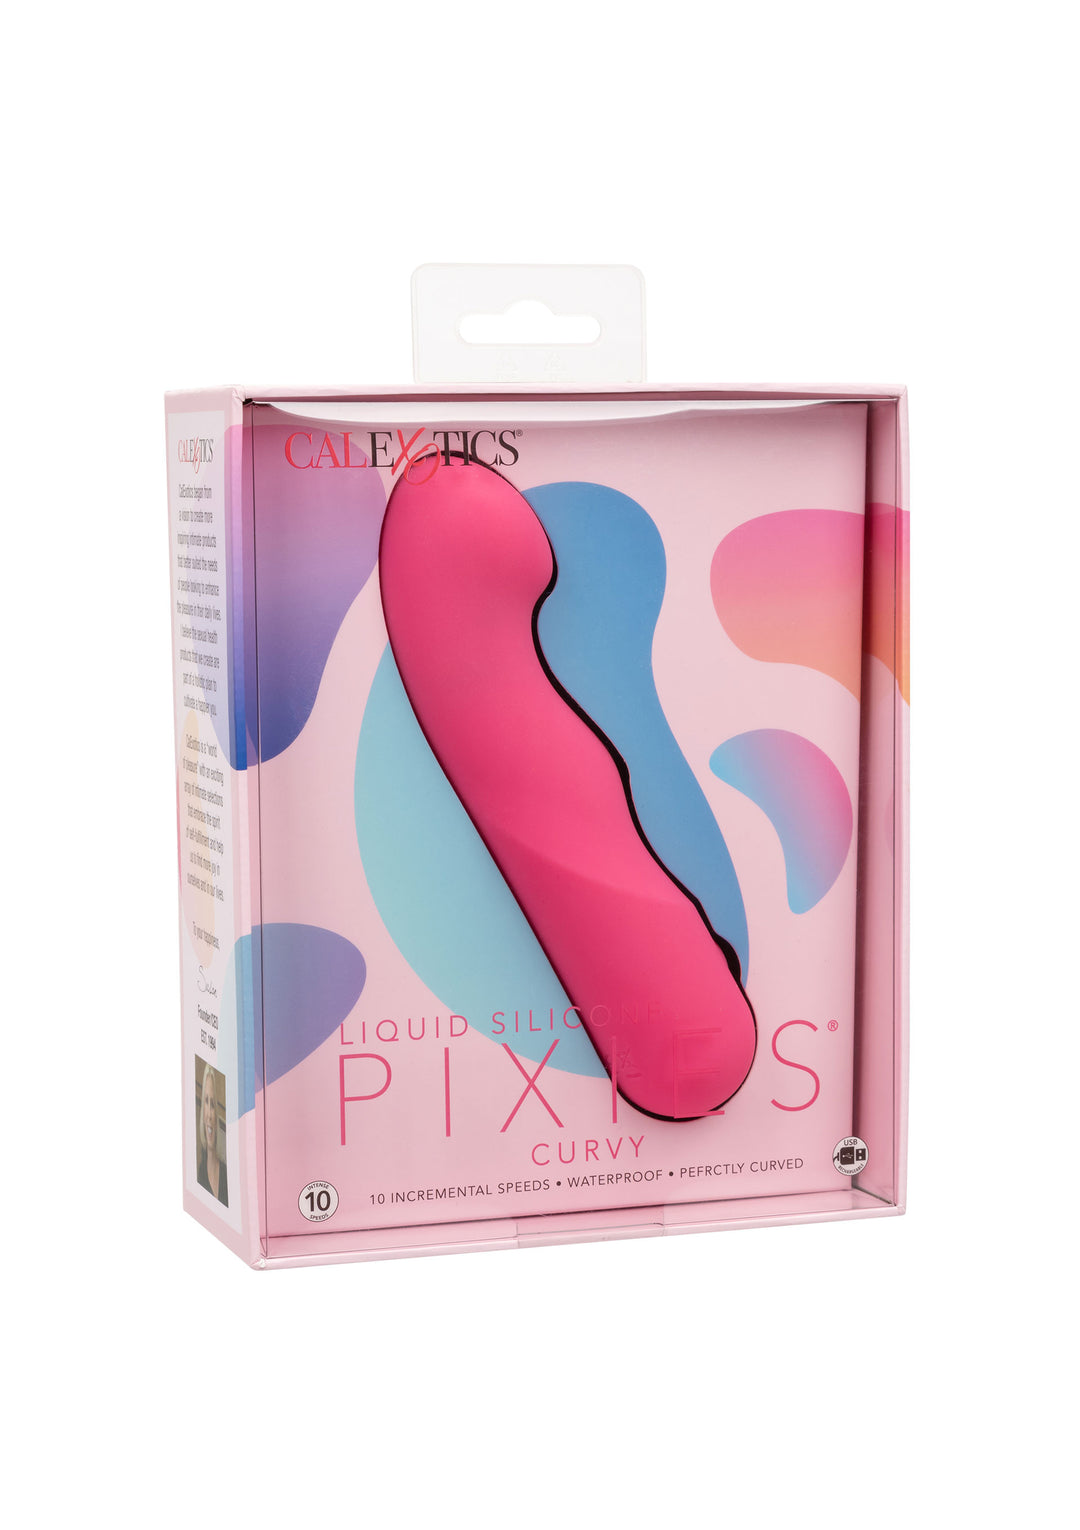 Pixies Curvy silicone vibrator